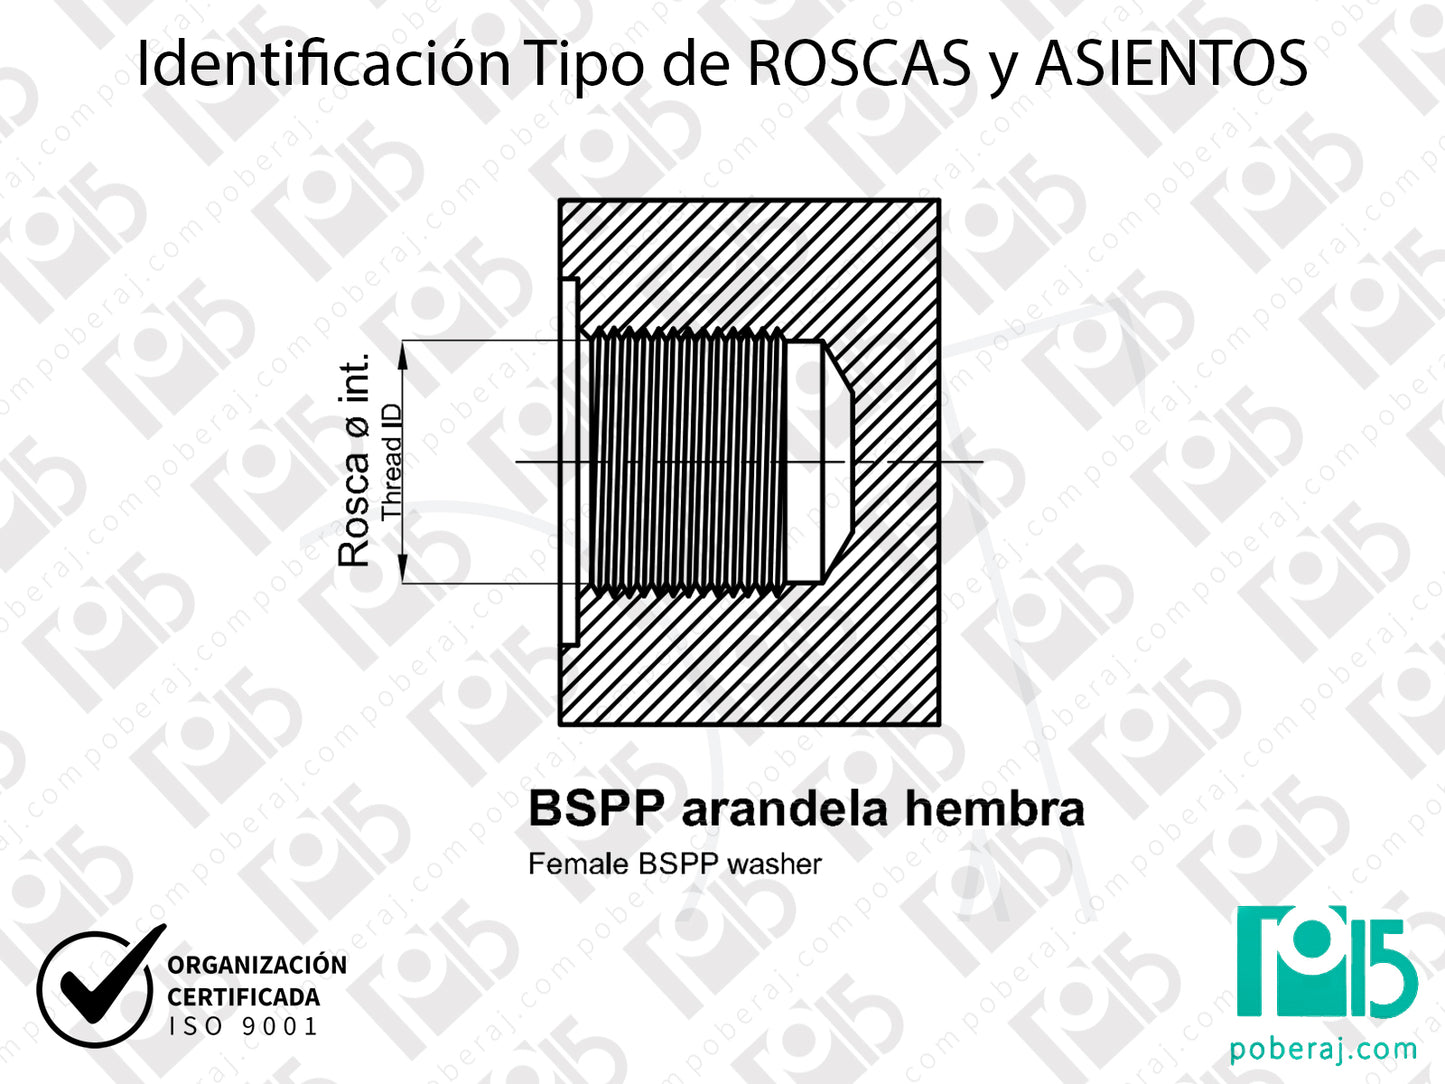 W- Identificación Tipo de ROSCAS y ASIENTOS: BSPP arandela hembra